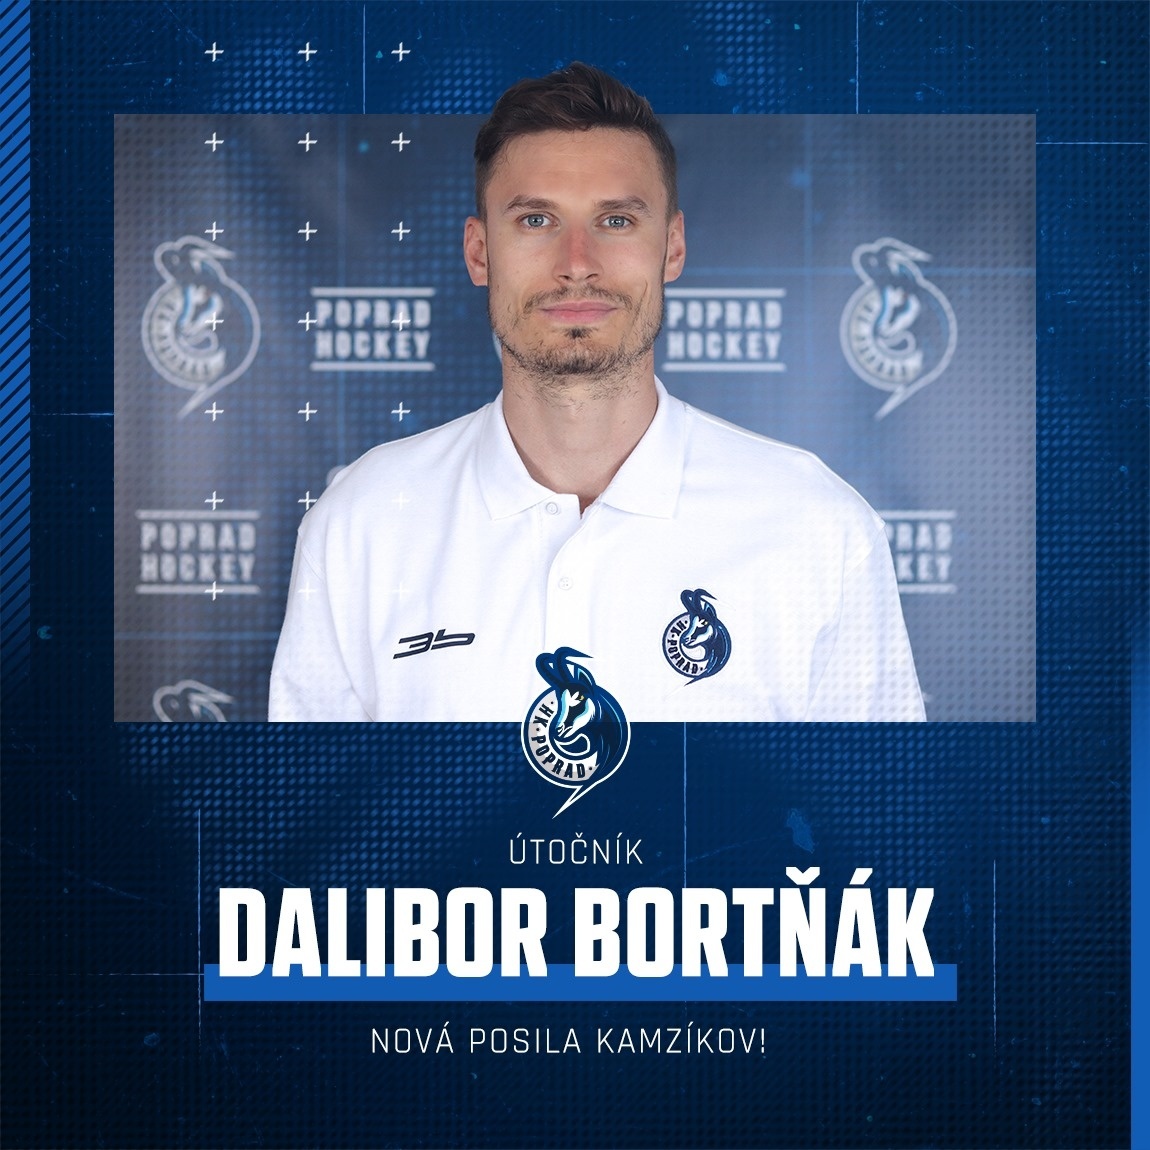 Dalibor Bortňák